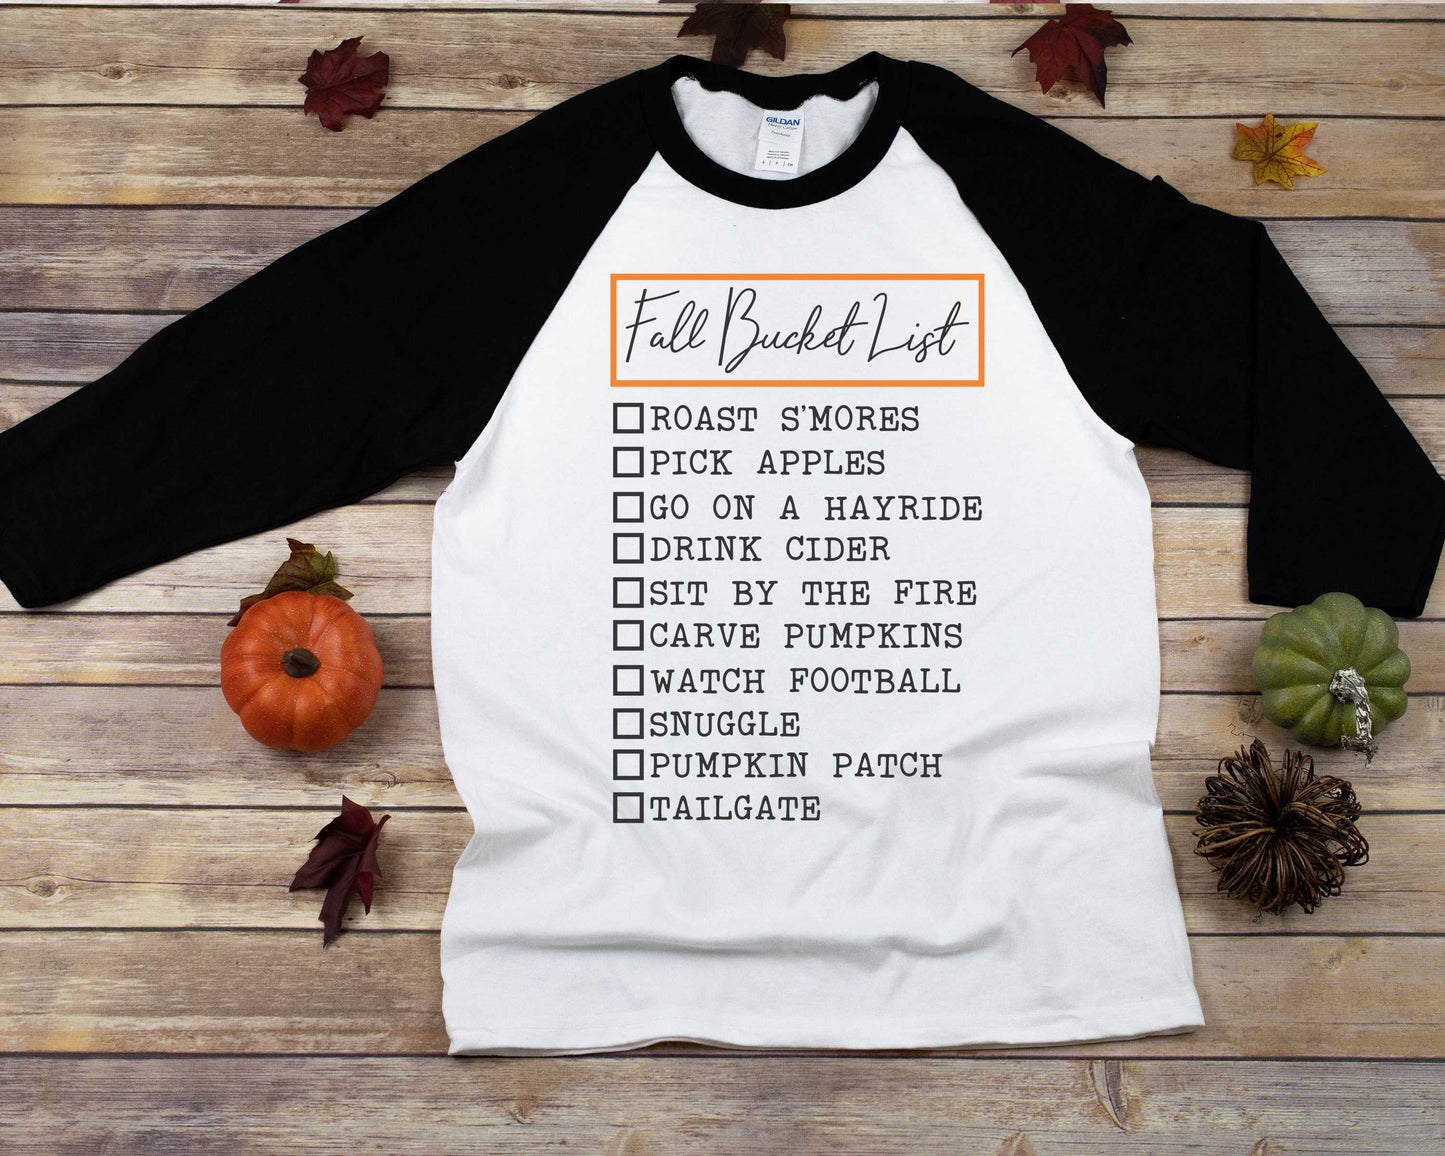 Fall Bucket List Unisex raglan t-shirt - smores - apple picking - football shirt - pumpkin patch shirt - tailgate shirt - hayride shirt